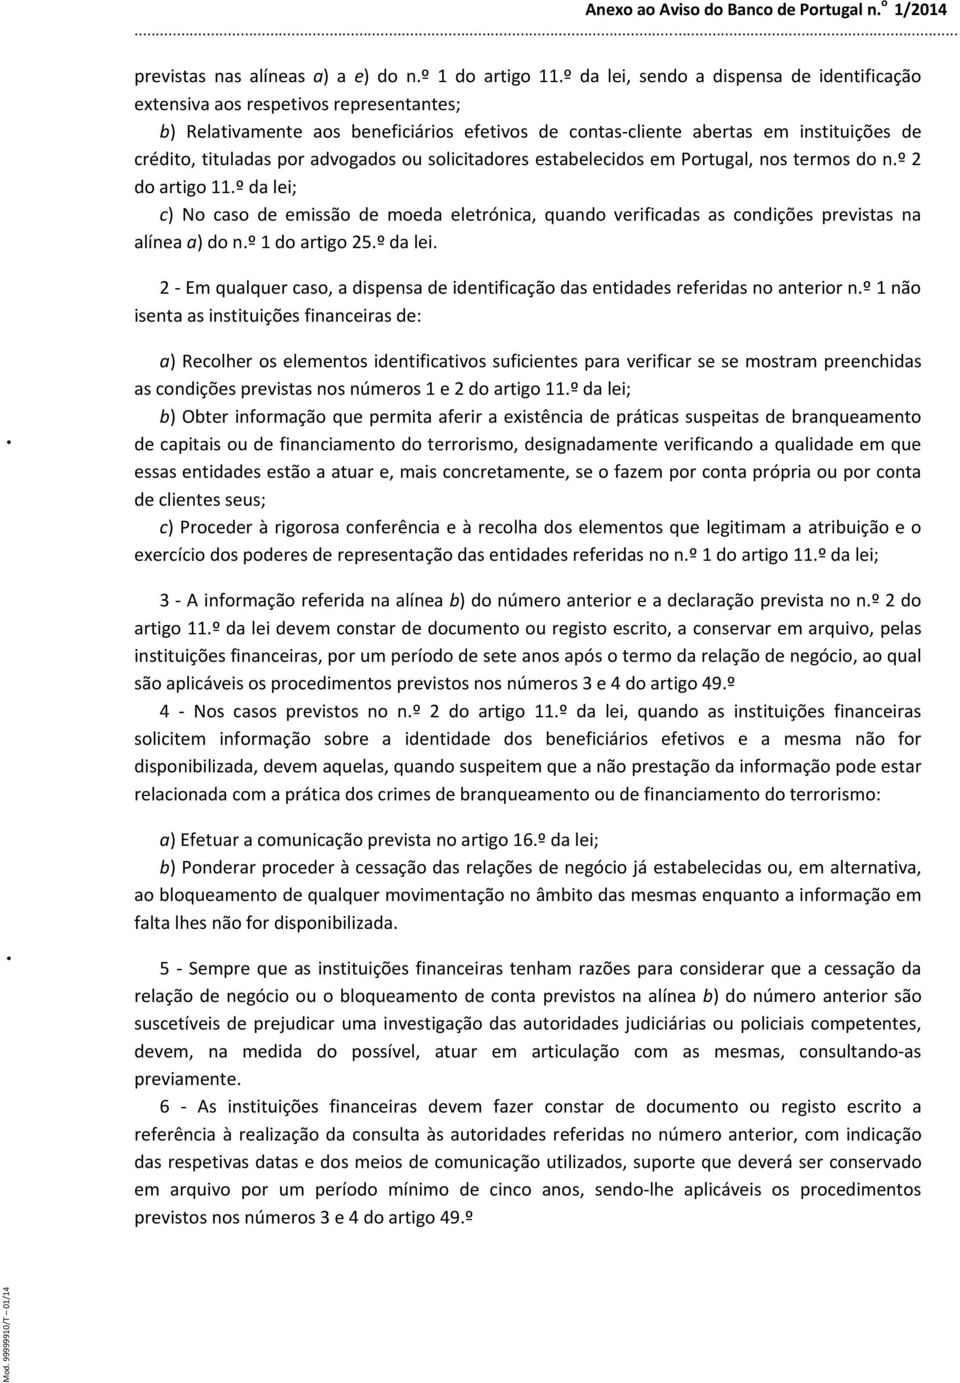 advogados ou solicitadores estabelecidos em Portugal, nos termos do n.º 2 do artigo 11.º da lei; c) No caso de emissão de moeda eletrónica, quando verificadas as condições previstas na alínea a) do n.